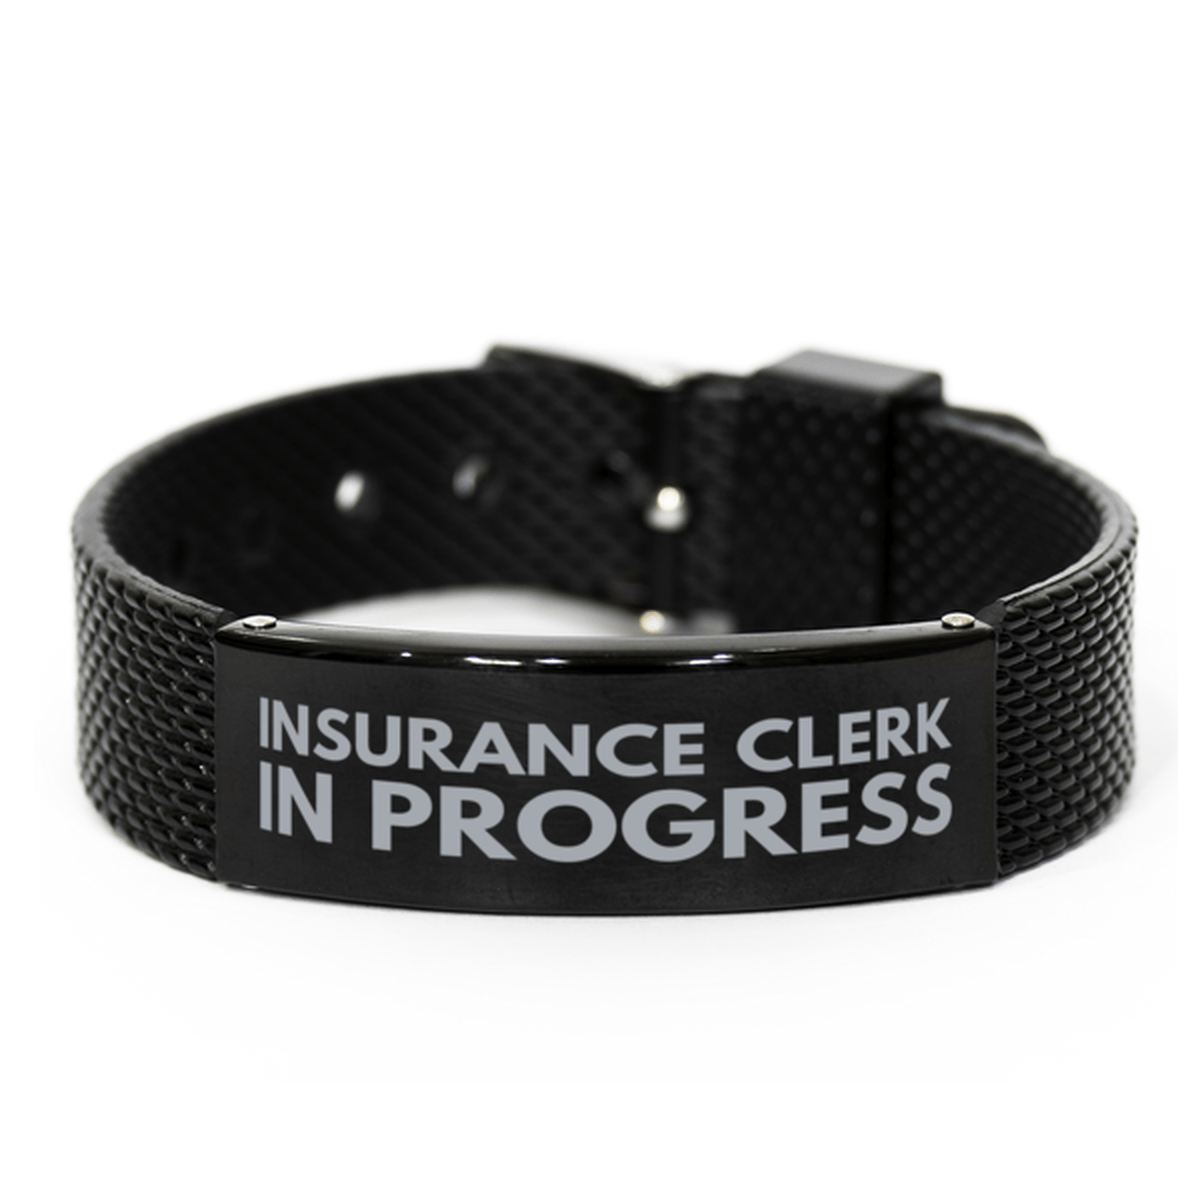 Inspirational Insurance Clerk Black Shark Mesh Bracelet, Insurance Clerk In Progress, Best Graduation Gifts for Students